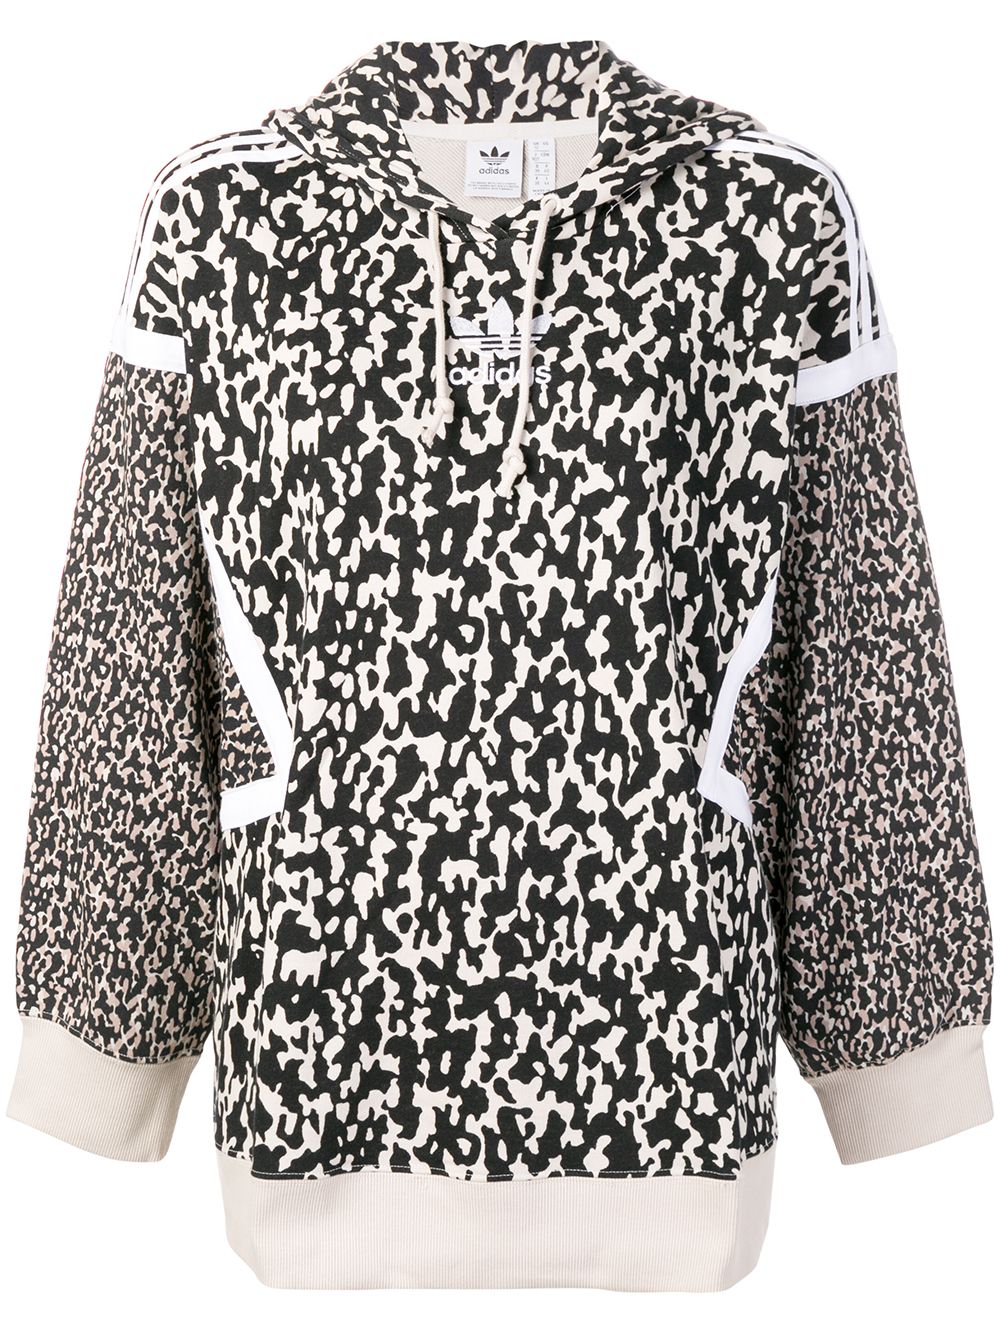 Adidas Leoflage print hoodie $63 - Buy 